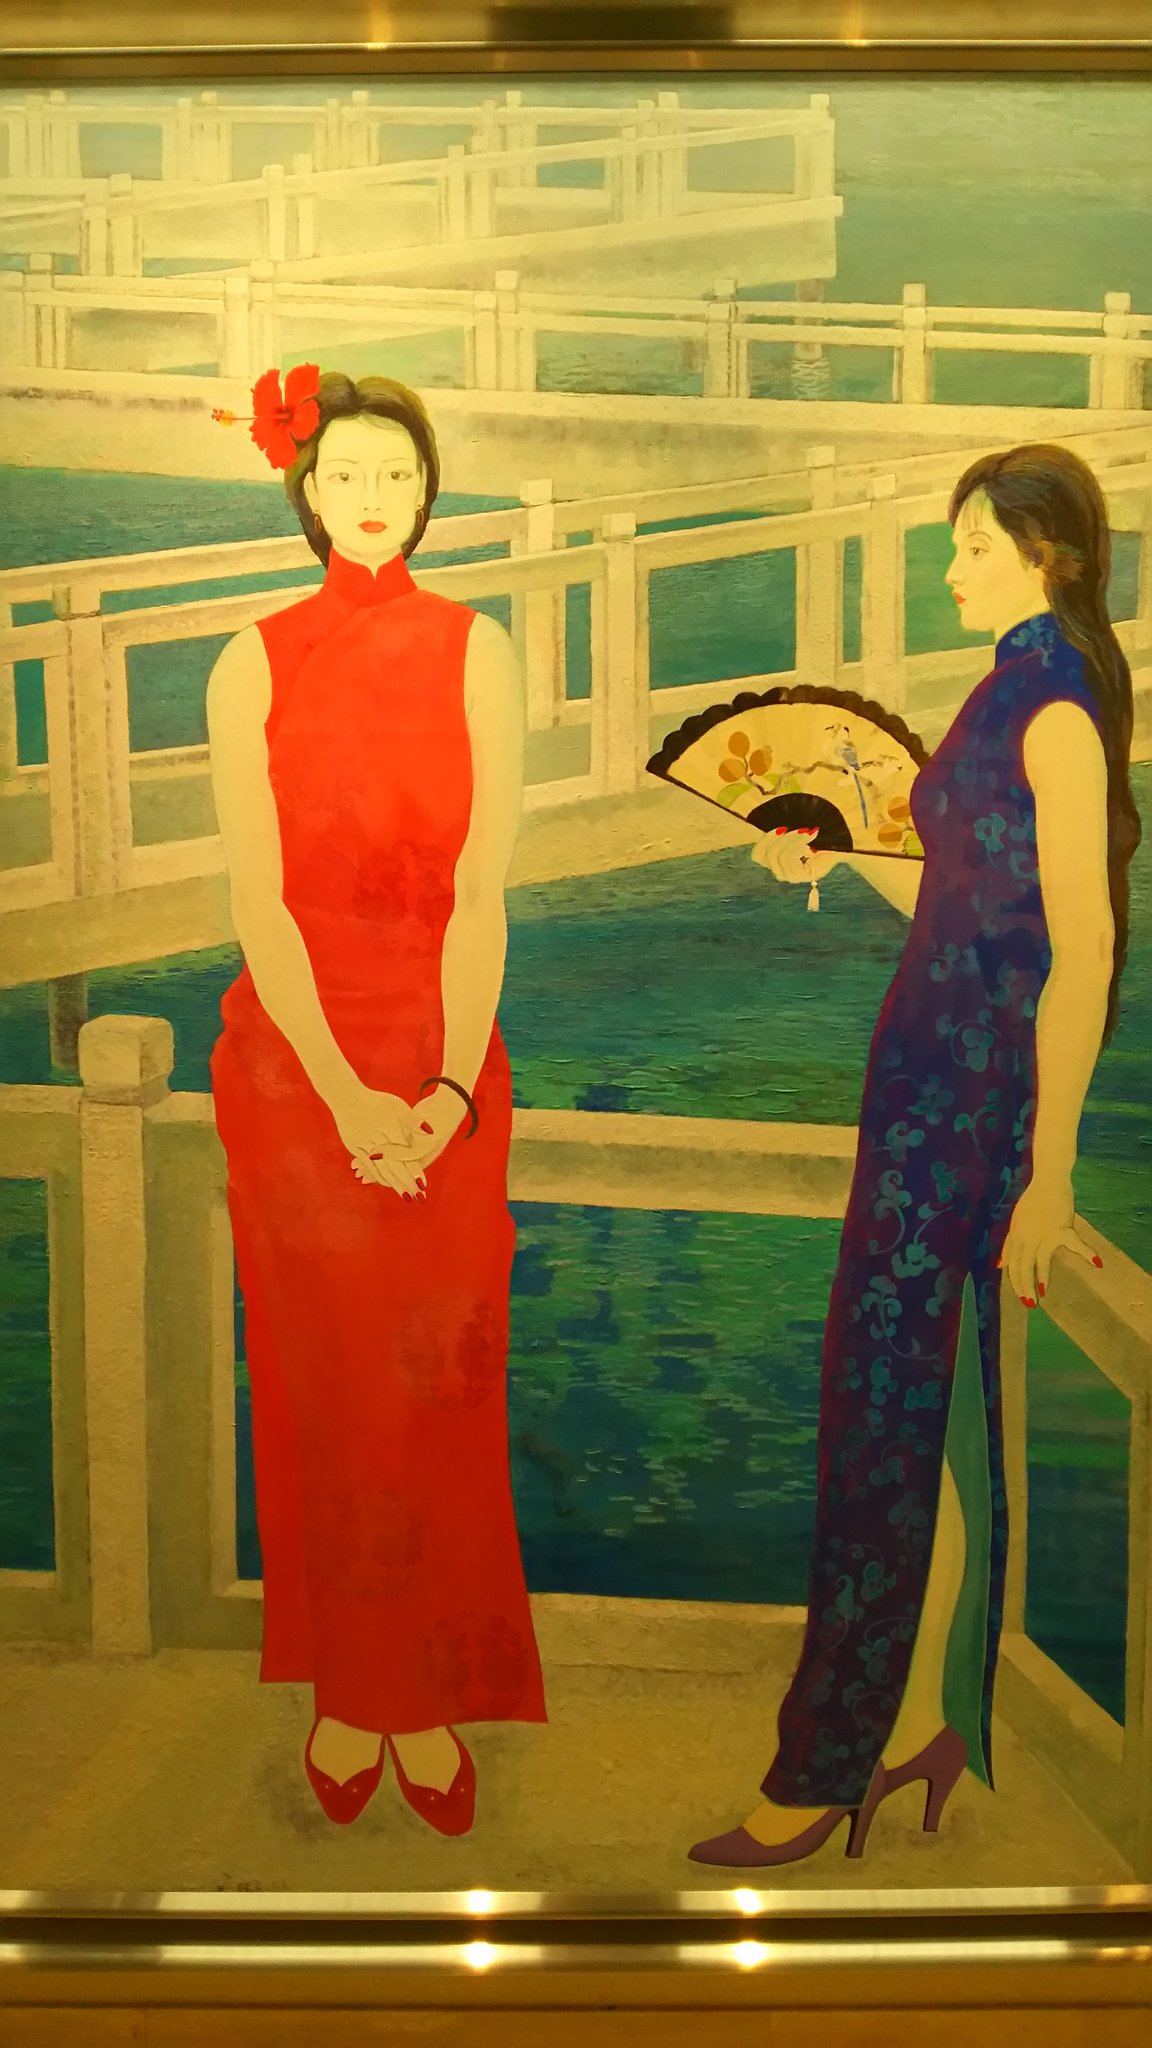 木村 on Twitter: "松岡美術館日本画展へ。お気に入り初見の昭和の作家の作品。濱田台児「九曲」伊藤深水の内弟子だそうです。色彩と構図